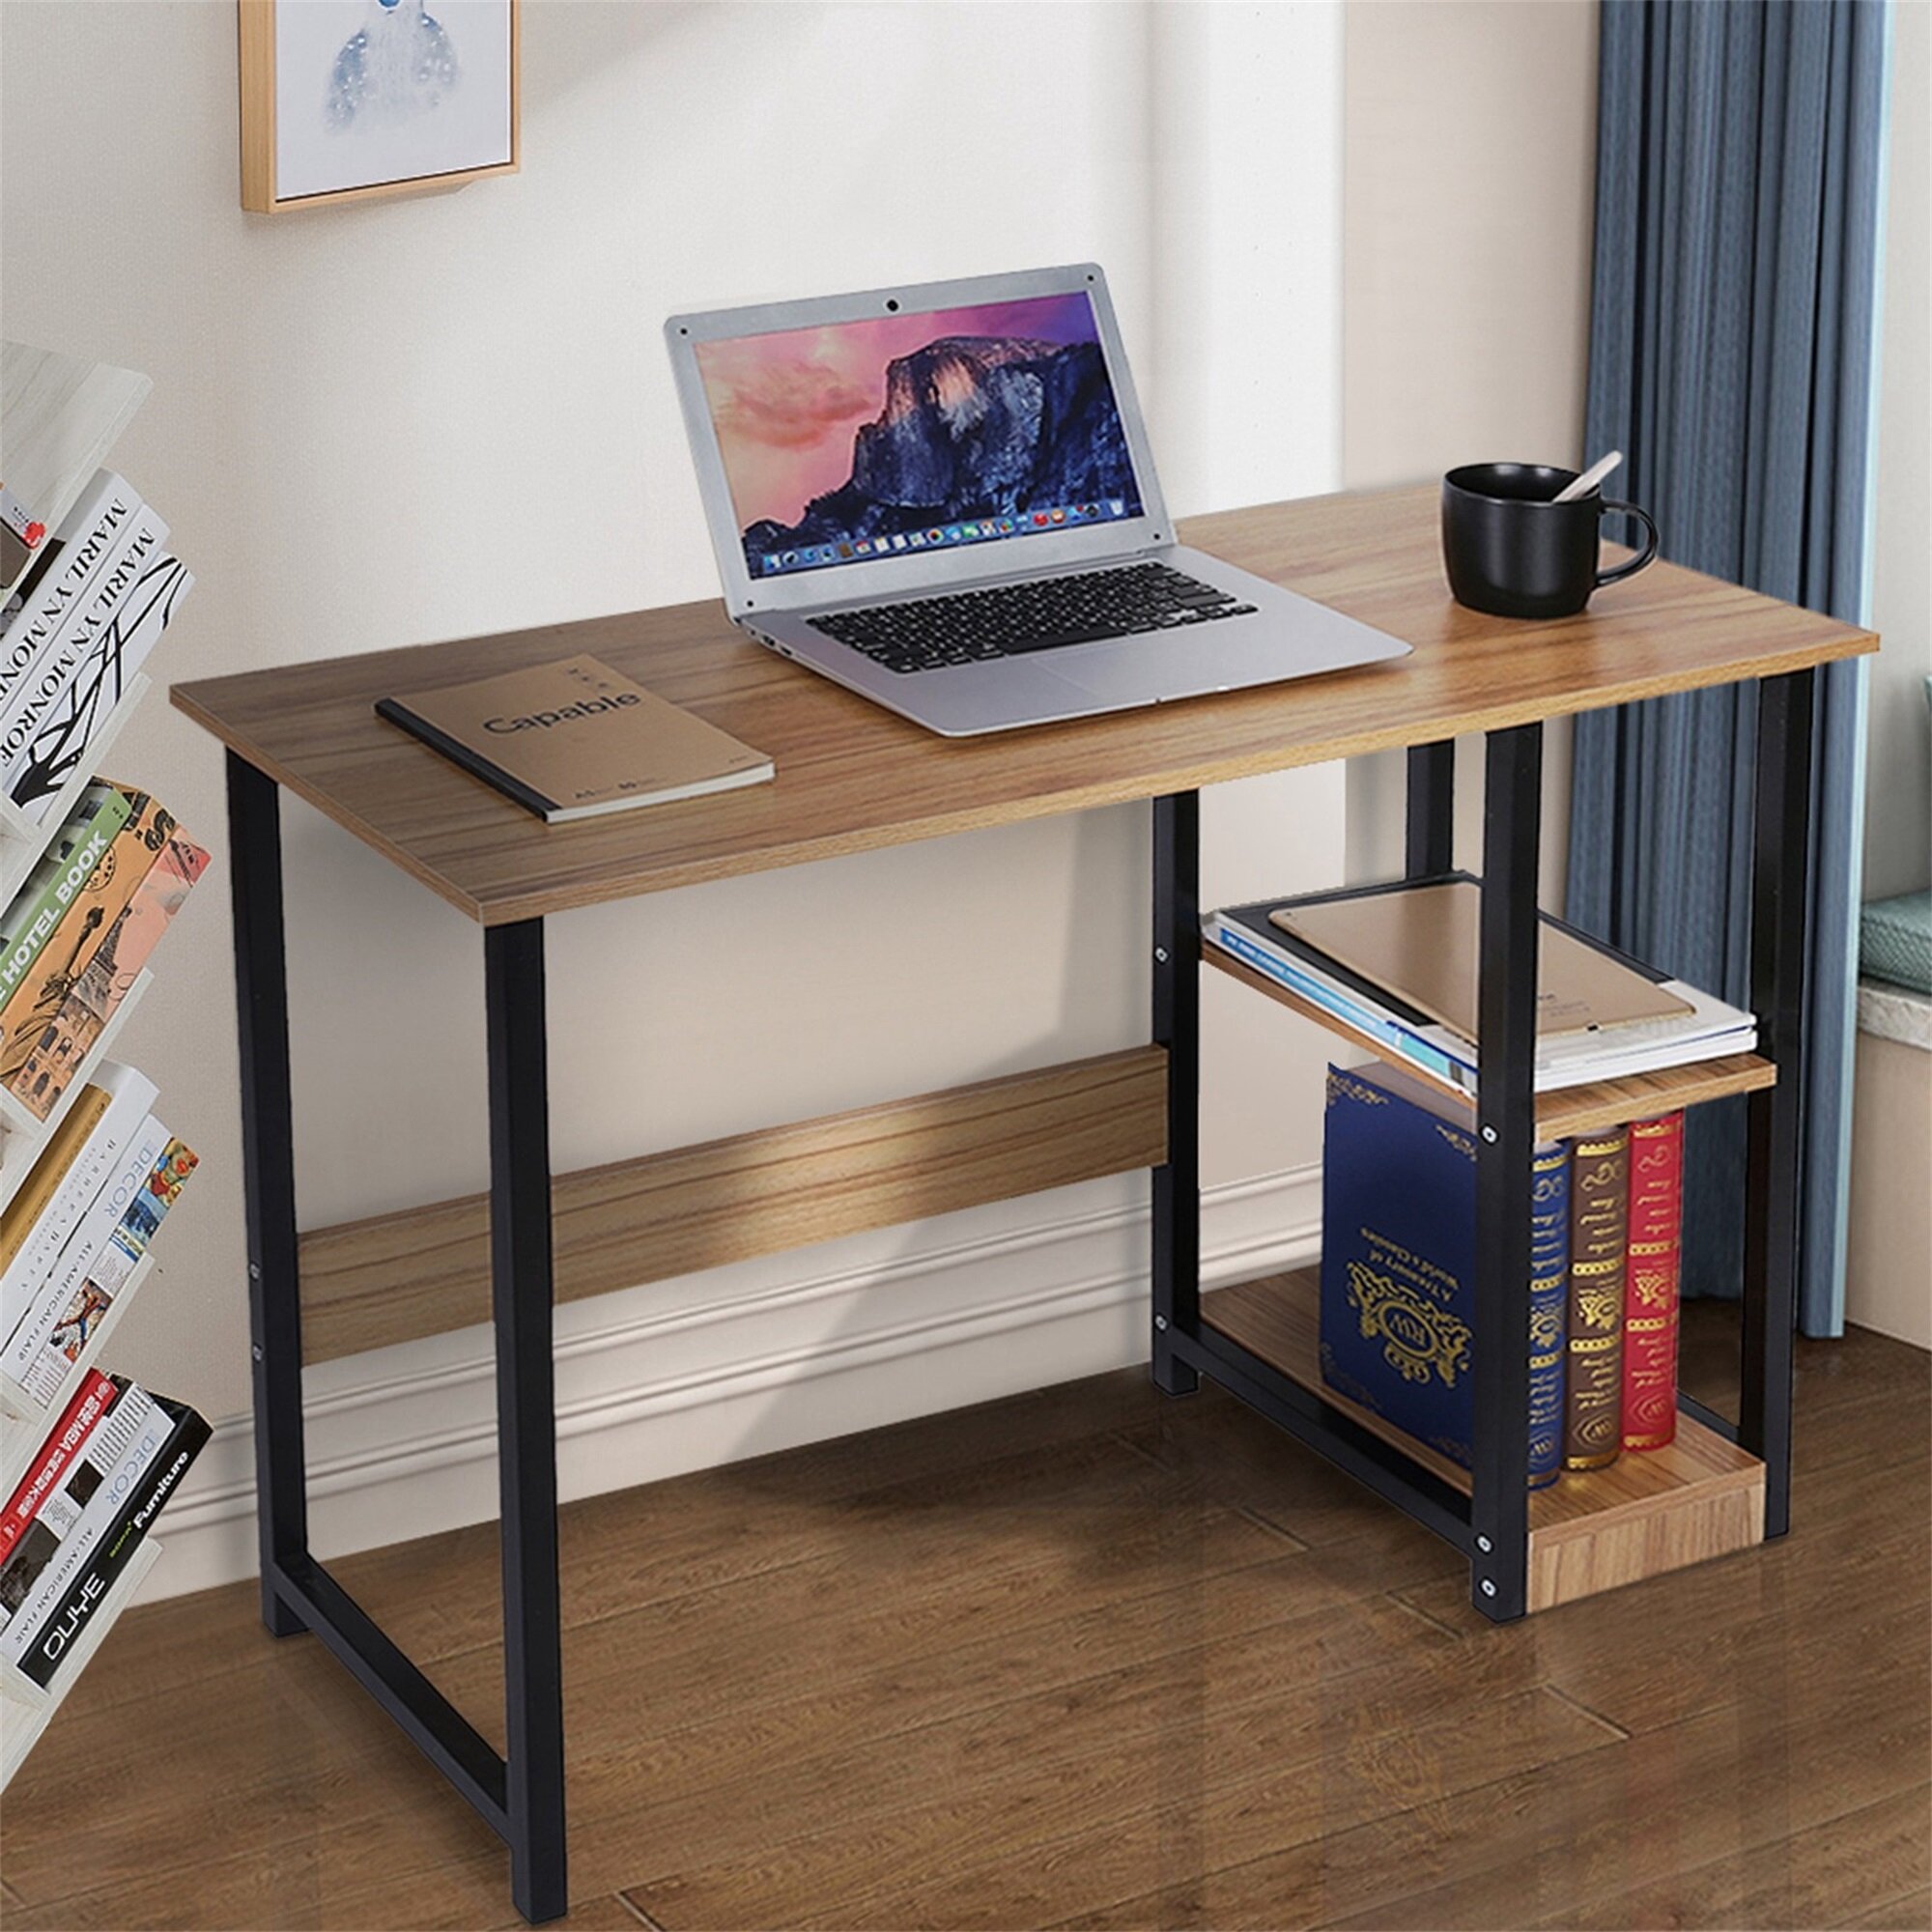 Details about   Home Desktop Office Desk Computer Desk Bedroom Laptop Study Table Workstation 